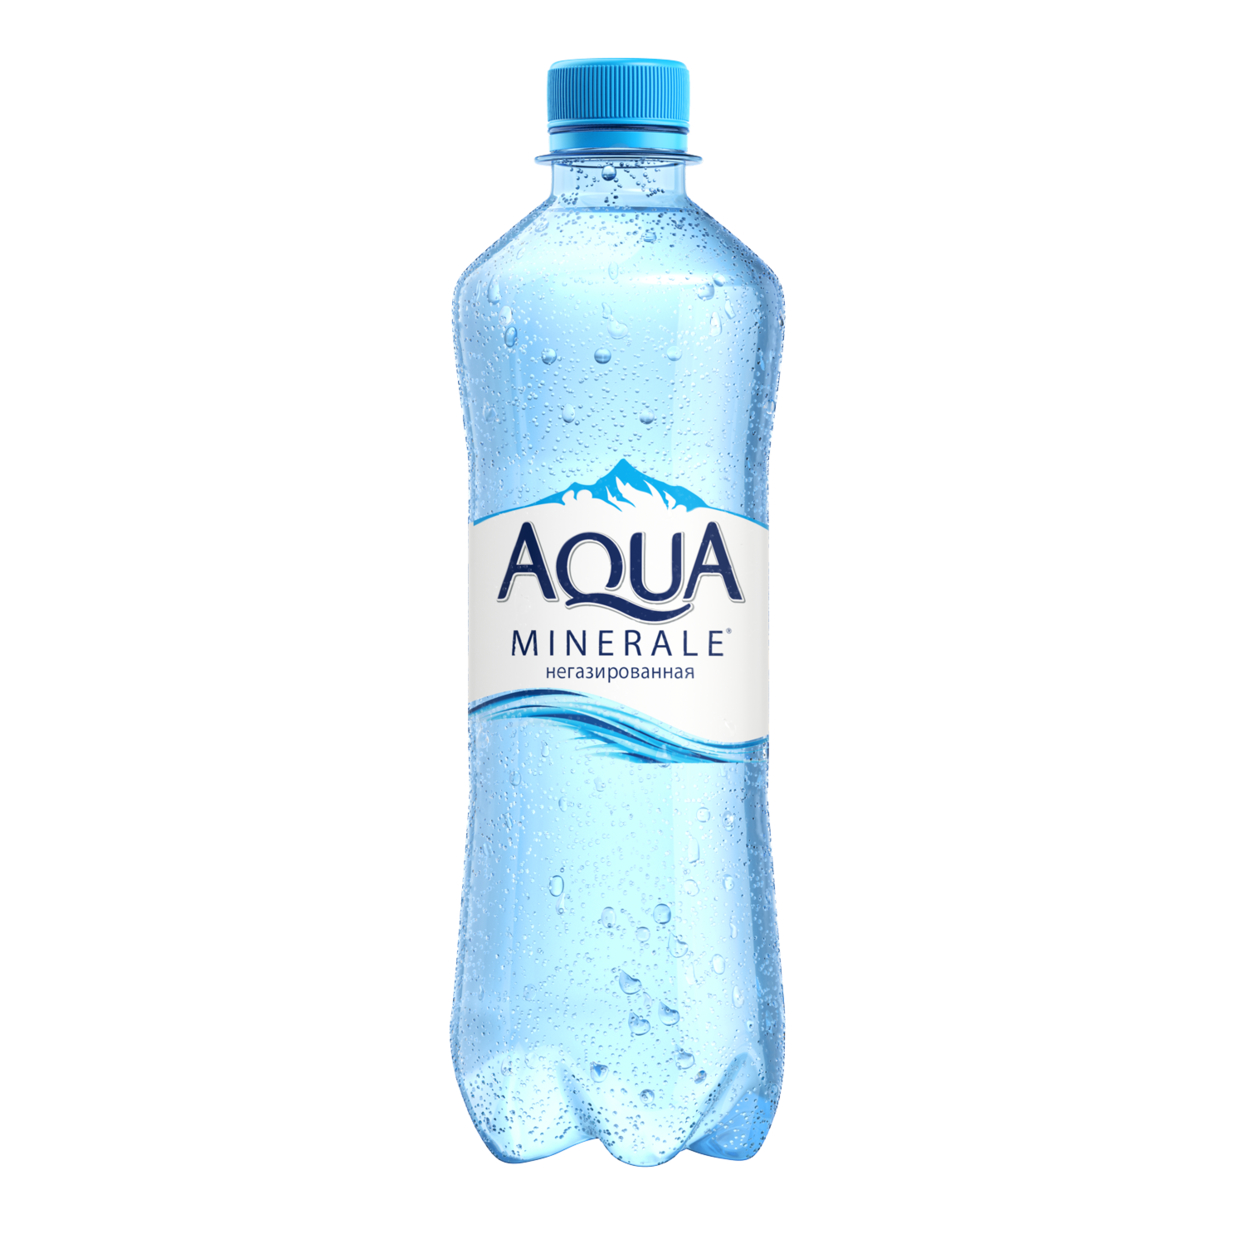 Вода питьевая негазированная первой категории под товарным знаком "Аква Минерале" 0.5л